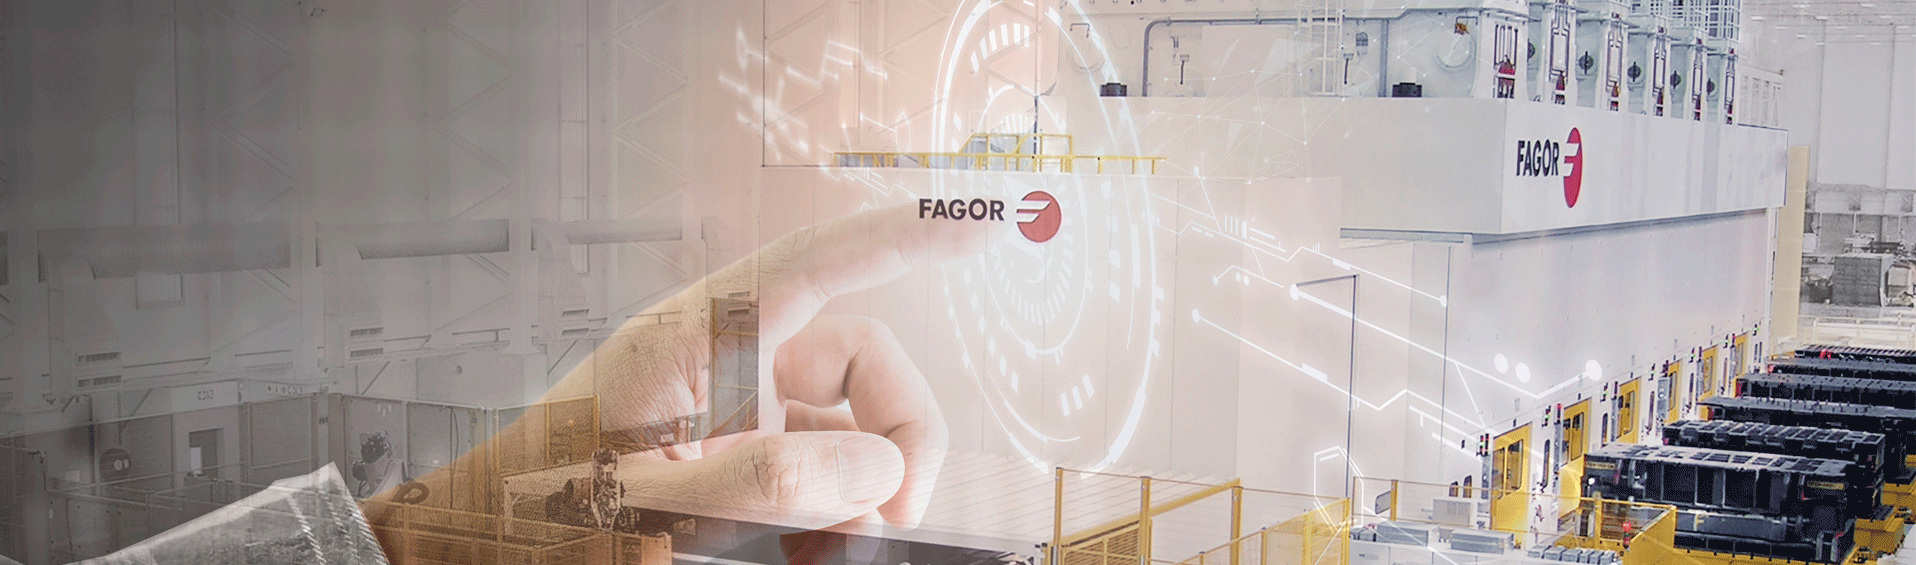 Fagor Arrasate - Customized solutions